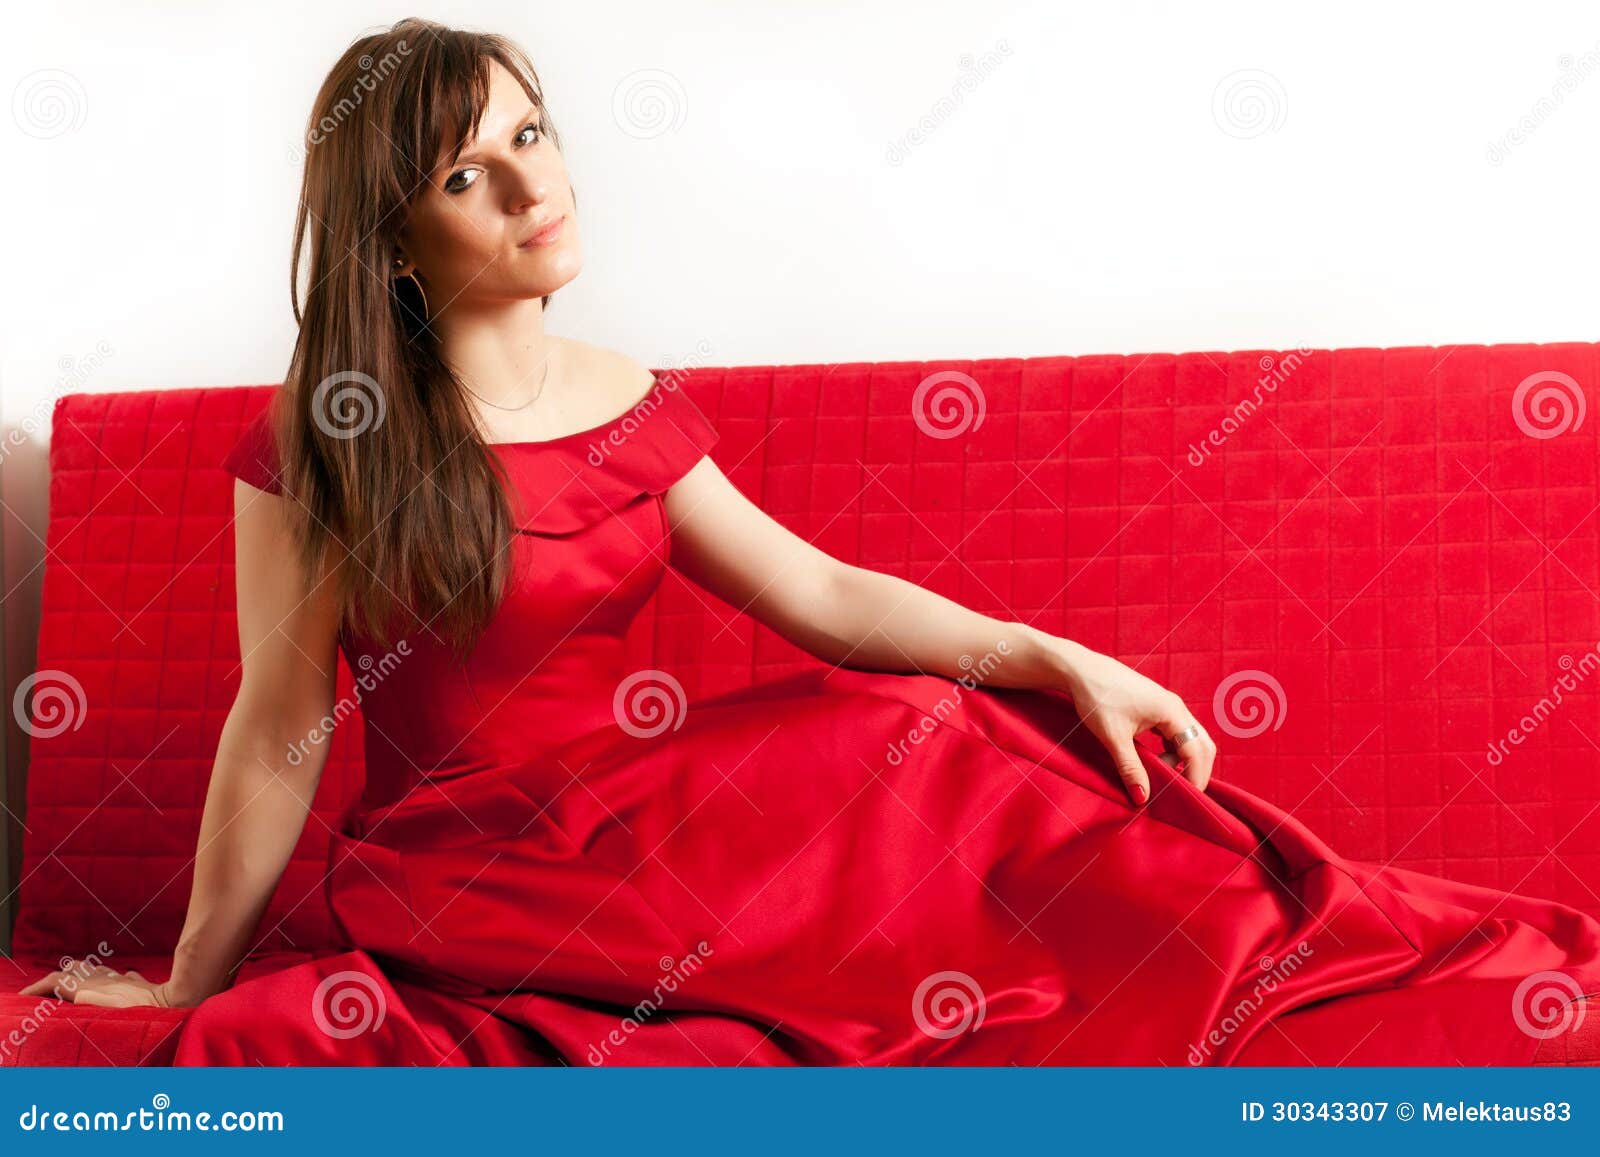 Дама состоятельного мужика интимно удовлетворяет на красном диване